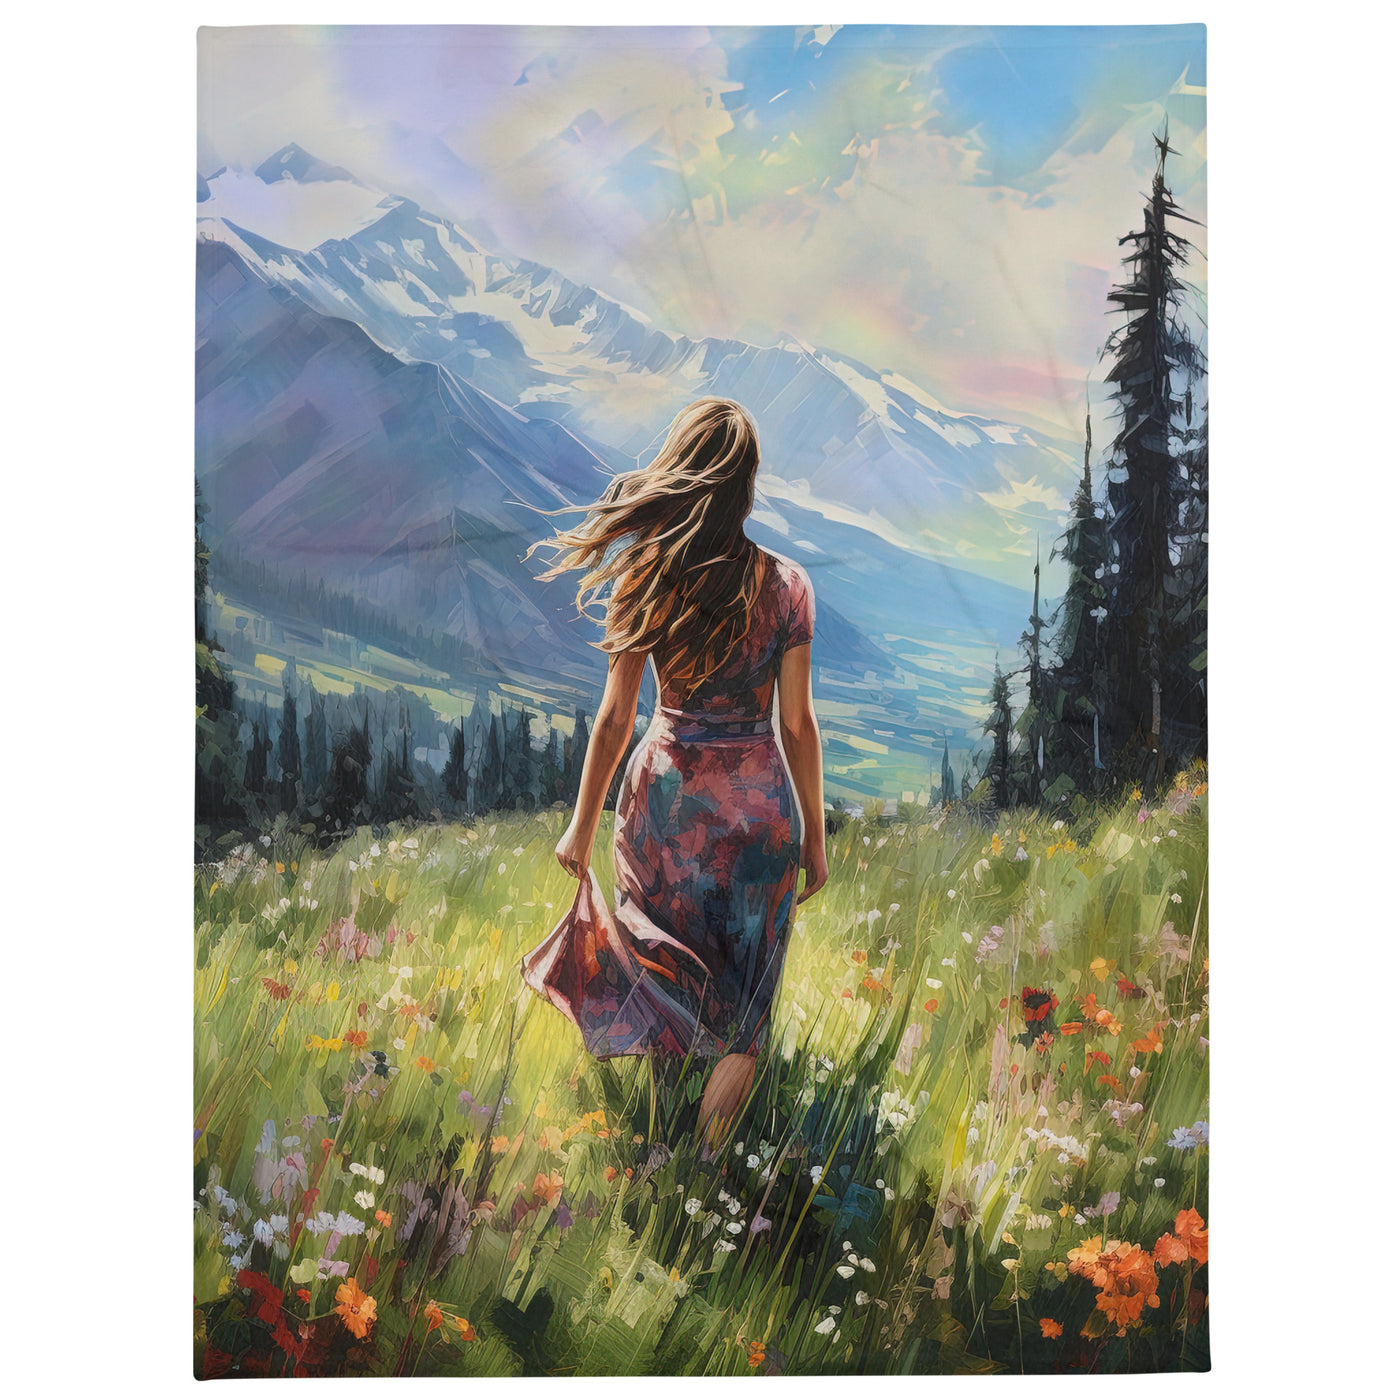 Frau mit langen Kleid im Feld mit Blumen - Berge im Hintergrund - Malerei - Überwurfdecke berge xxx 152.4 x 203.2 cm